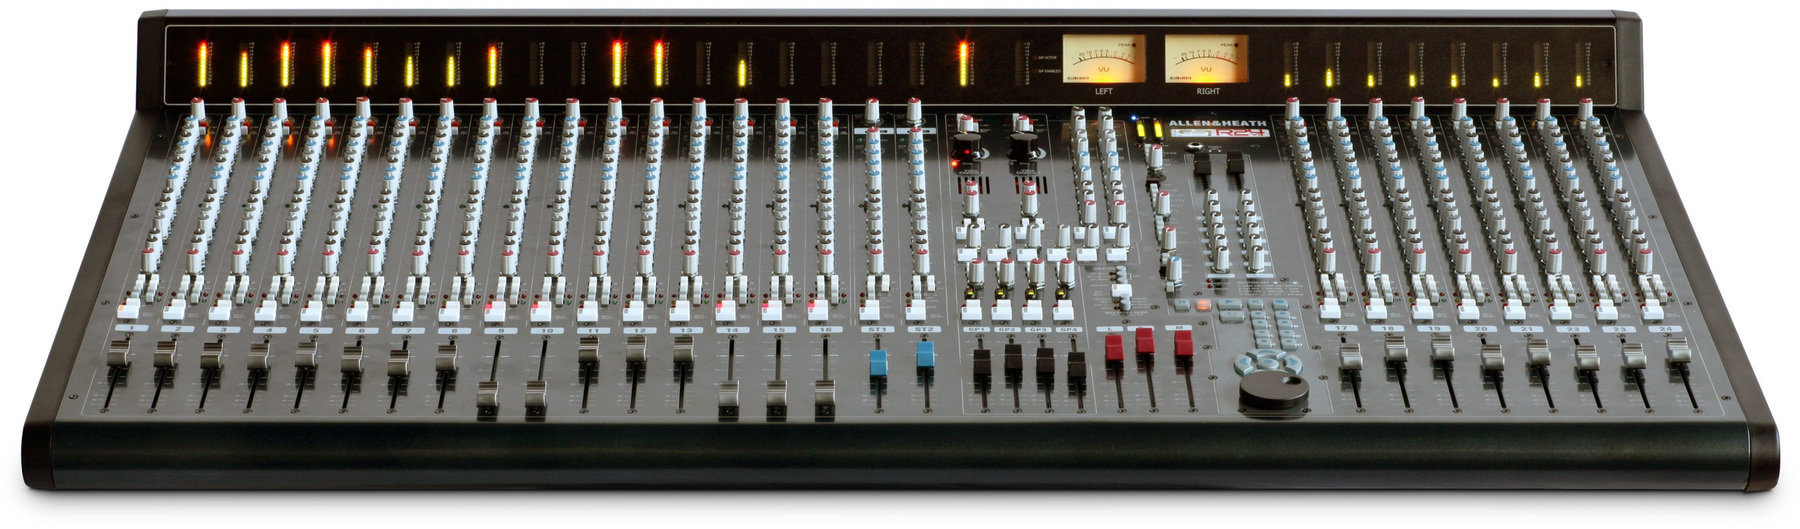 Table de mixage analogique Allen & Heath GS-R24M